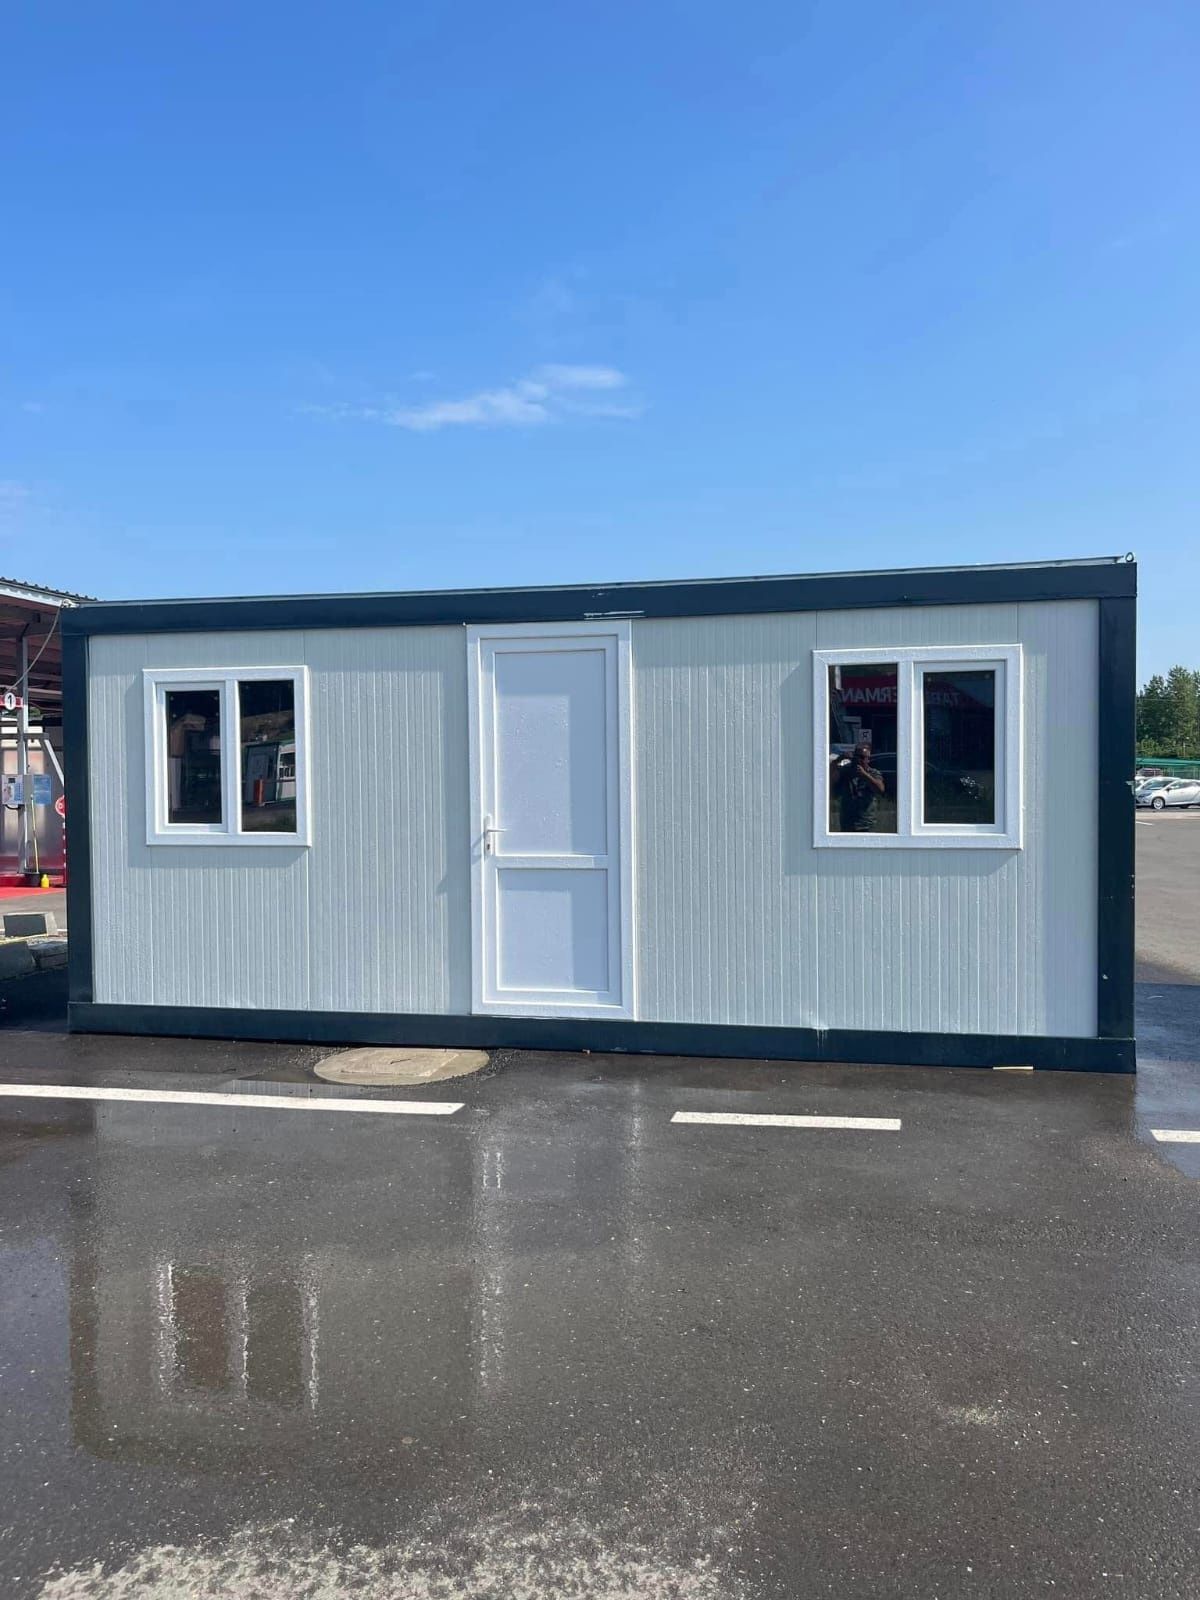 Vand container modular birou, grup sanitar,  comercial cu vitrina